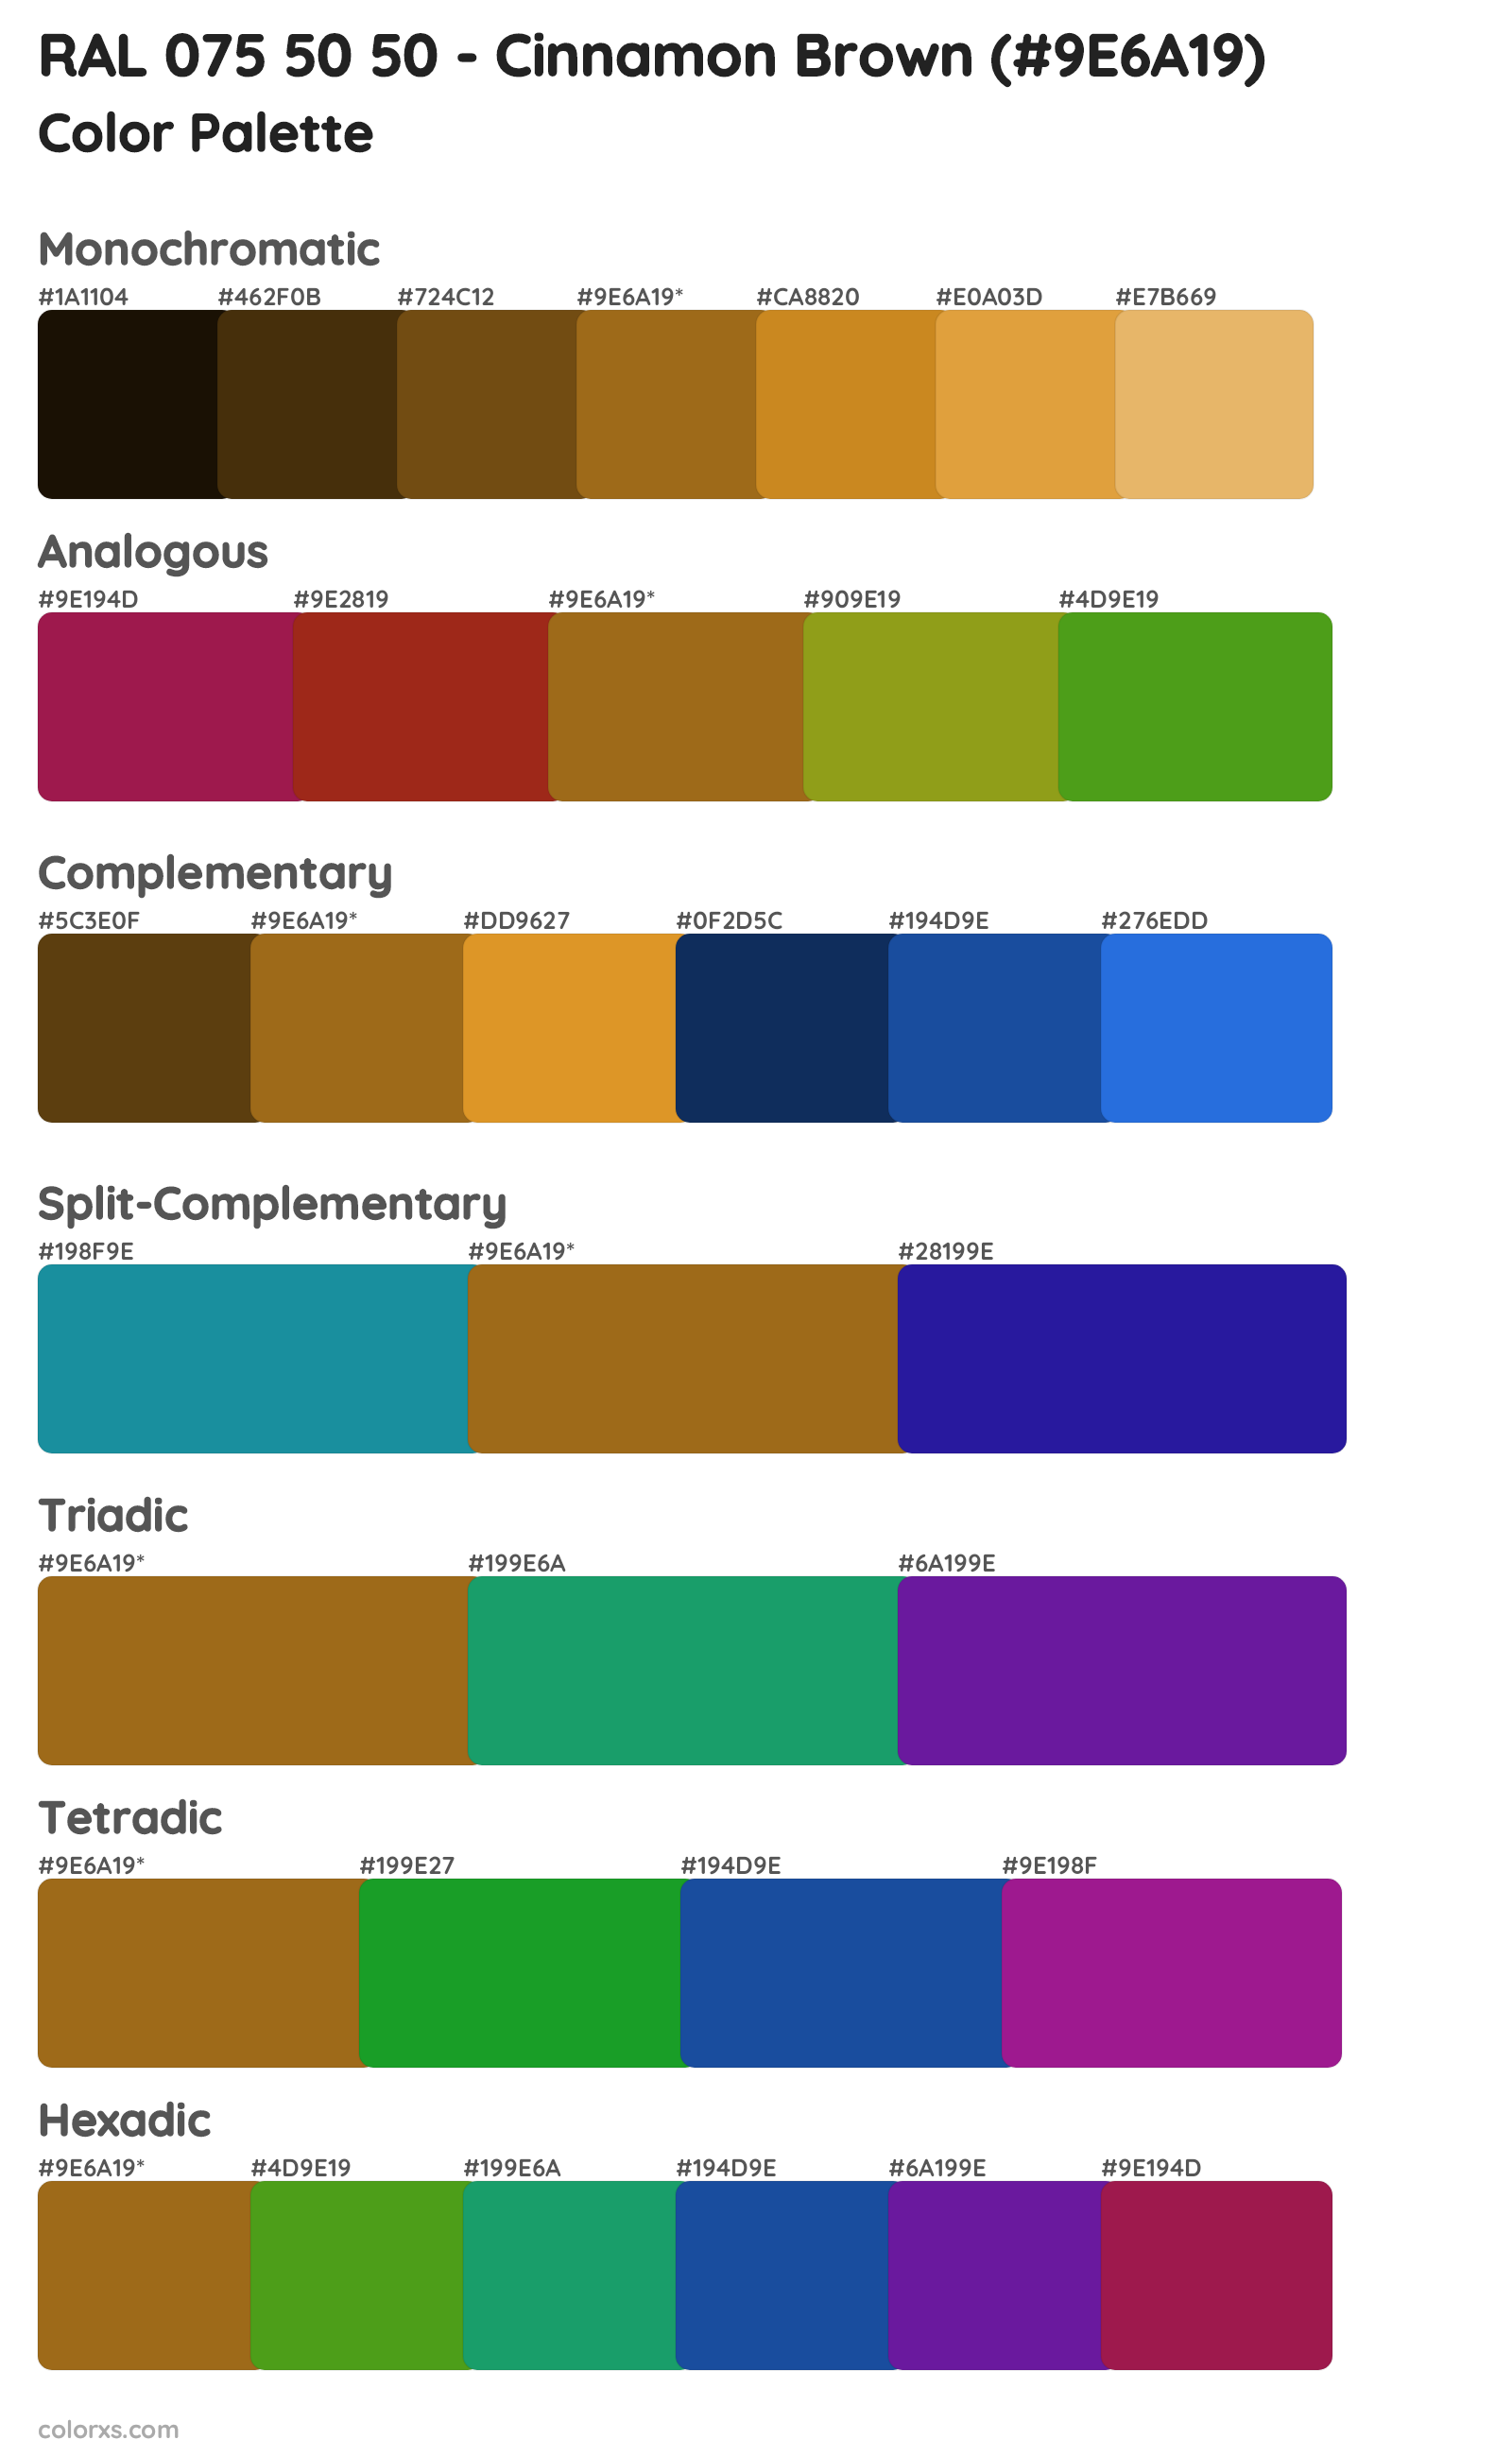 RAL 075 50 50 - Cinnamon Brown Color Scheme Palettes